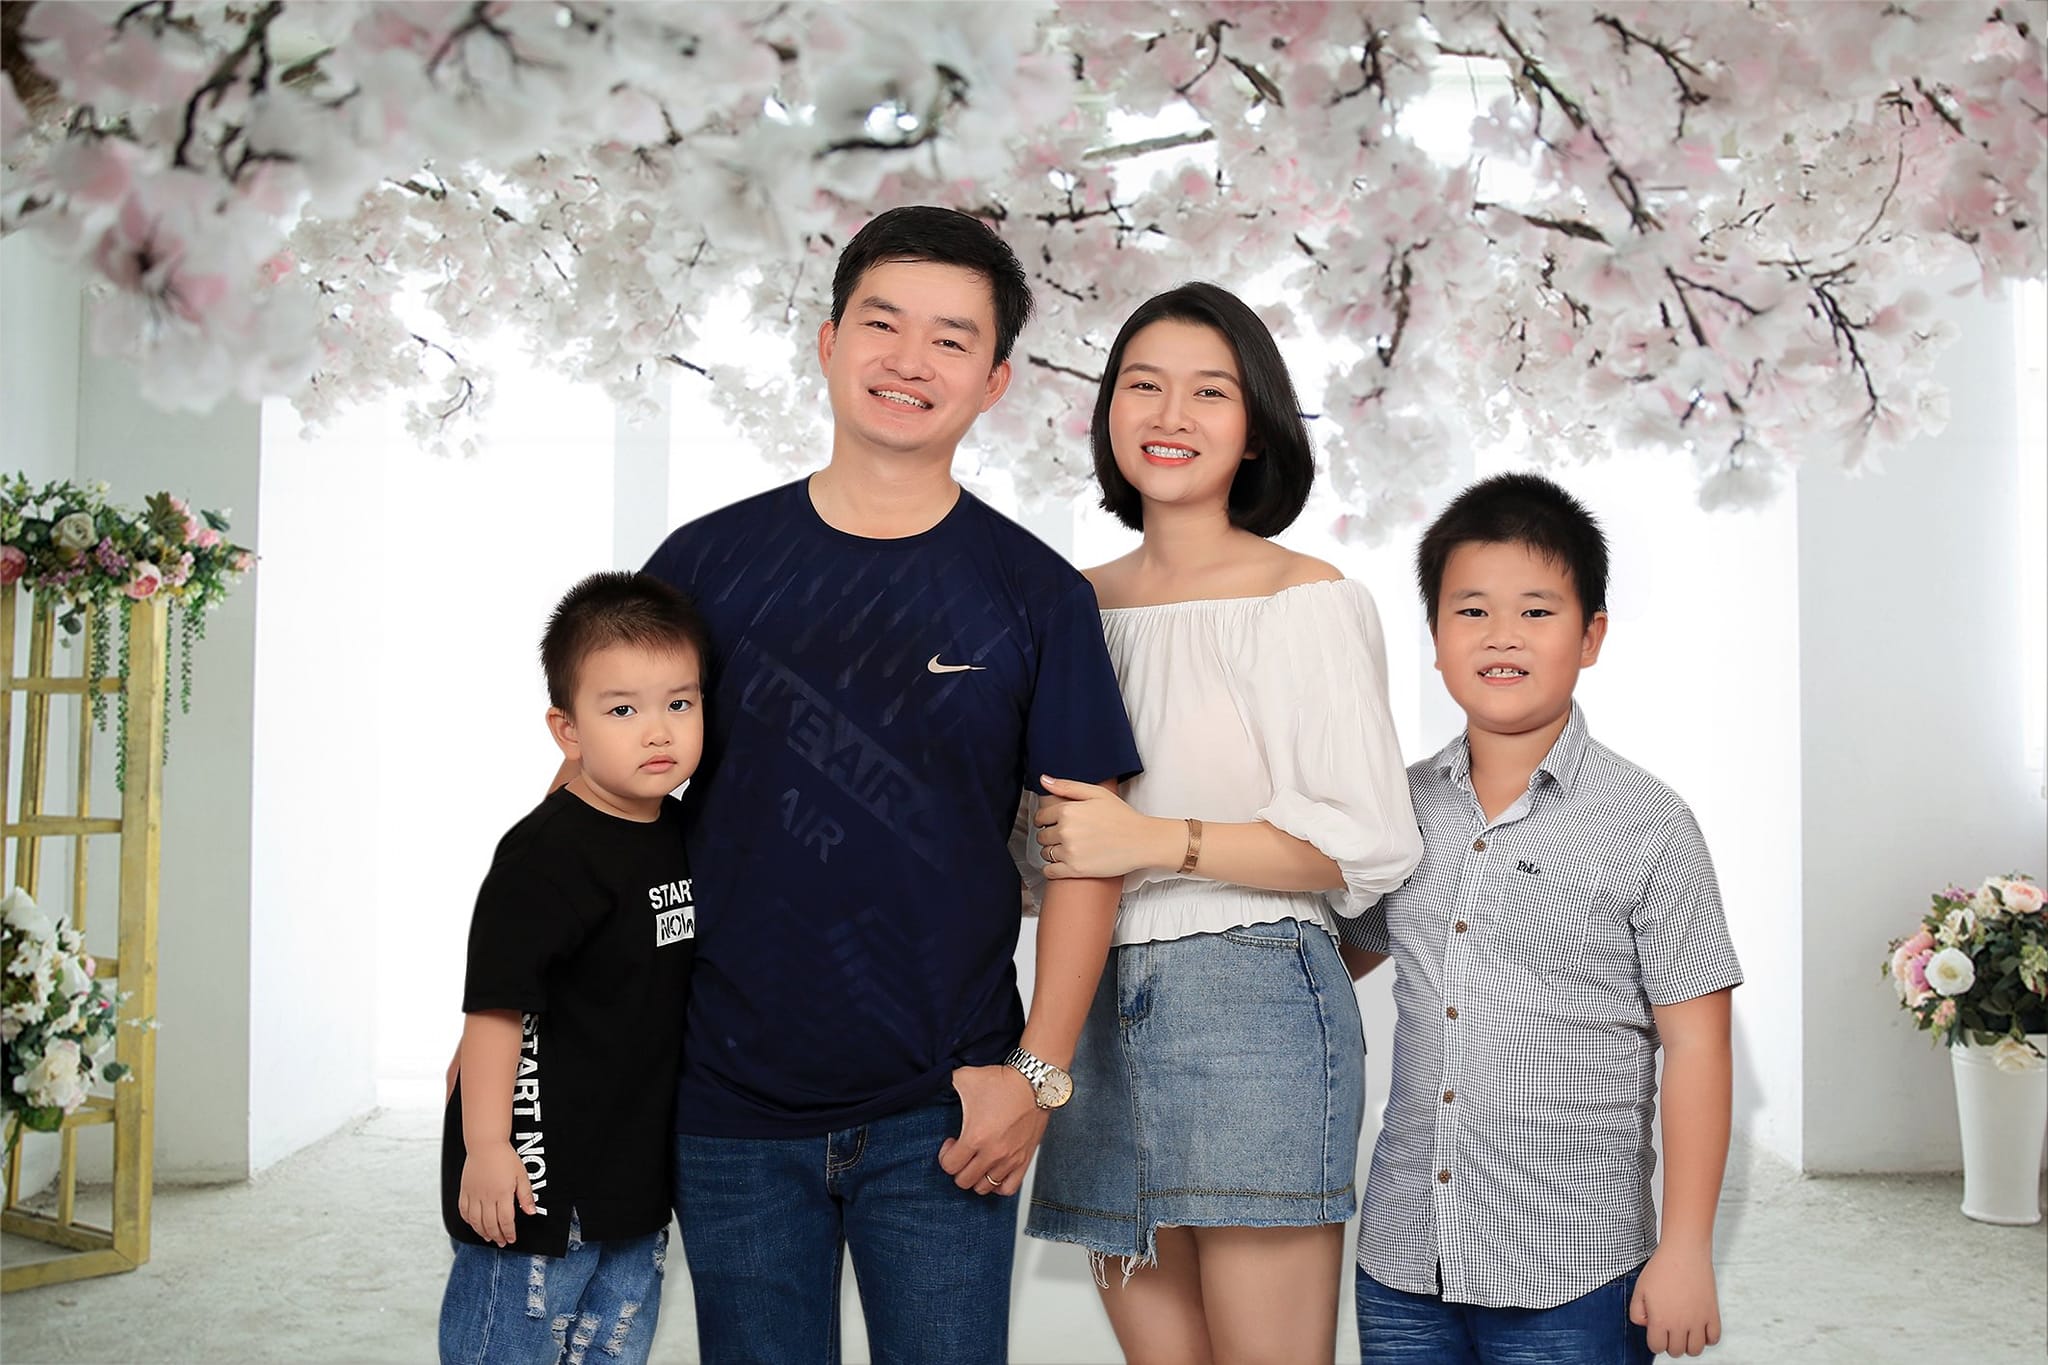 chụp hình gia đình chuyên nghiệp tại đà nẵng